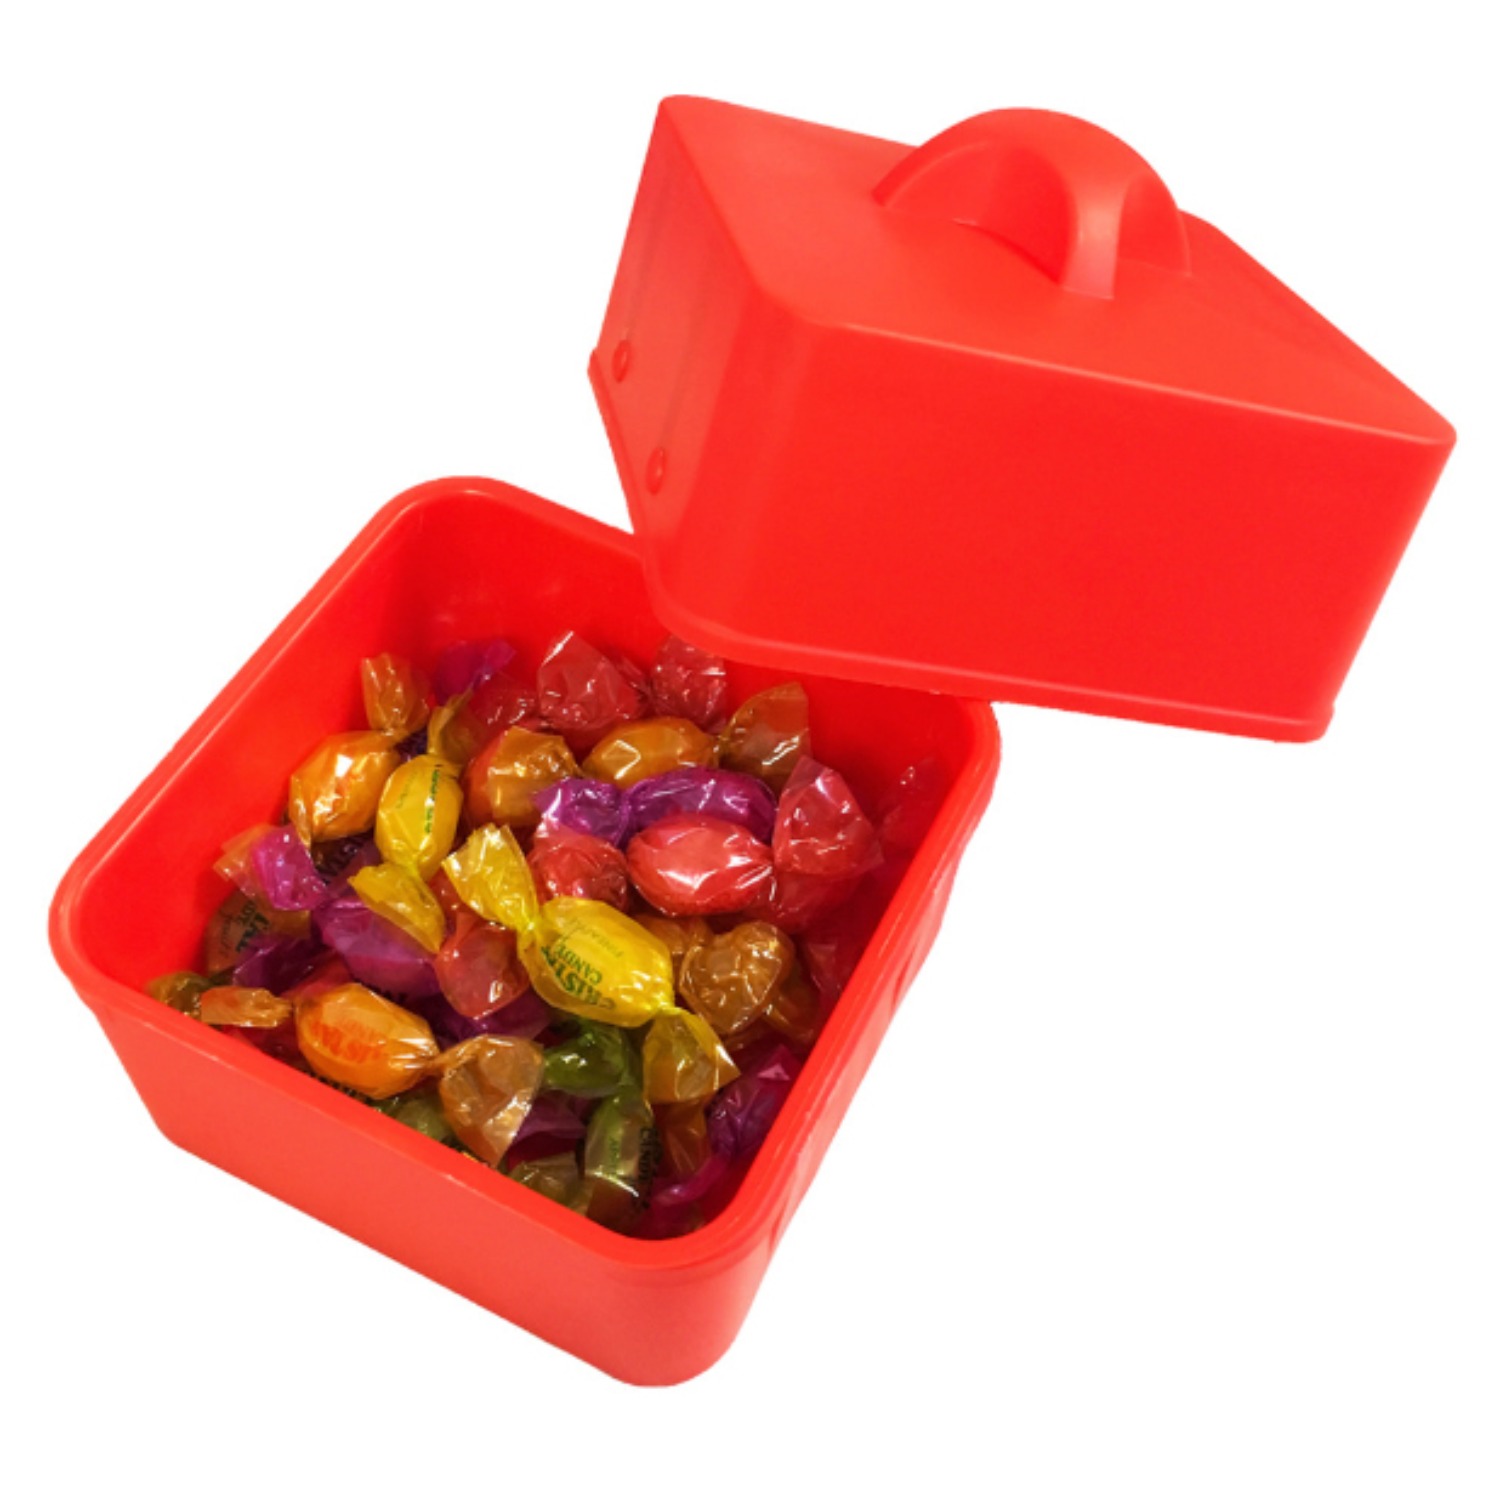 매직캔디박스(Magic candy box) 빈그릇에 사탕이 한가득 나타나게 하거나, 사라지게 할 수 있습니다. (partyn)